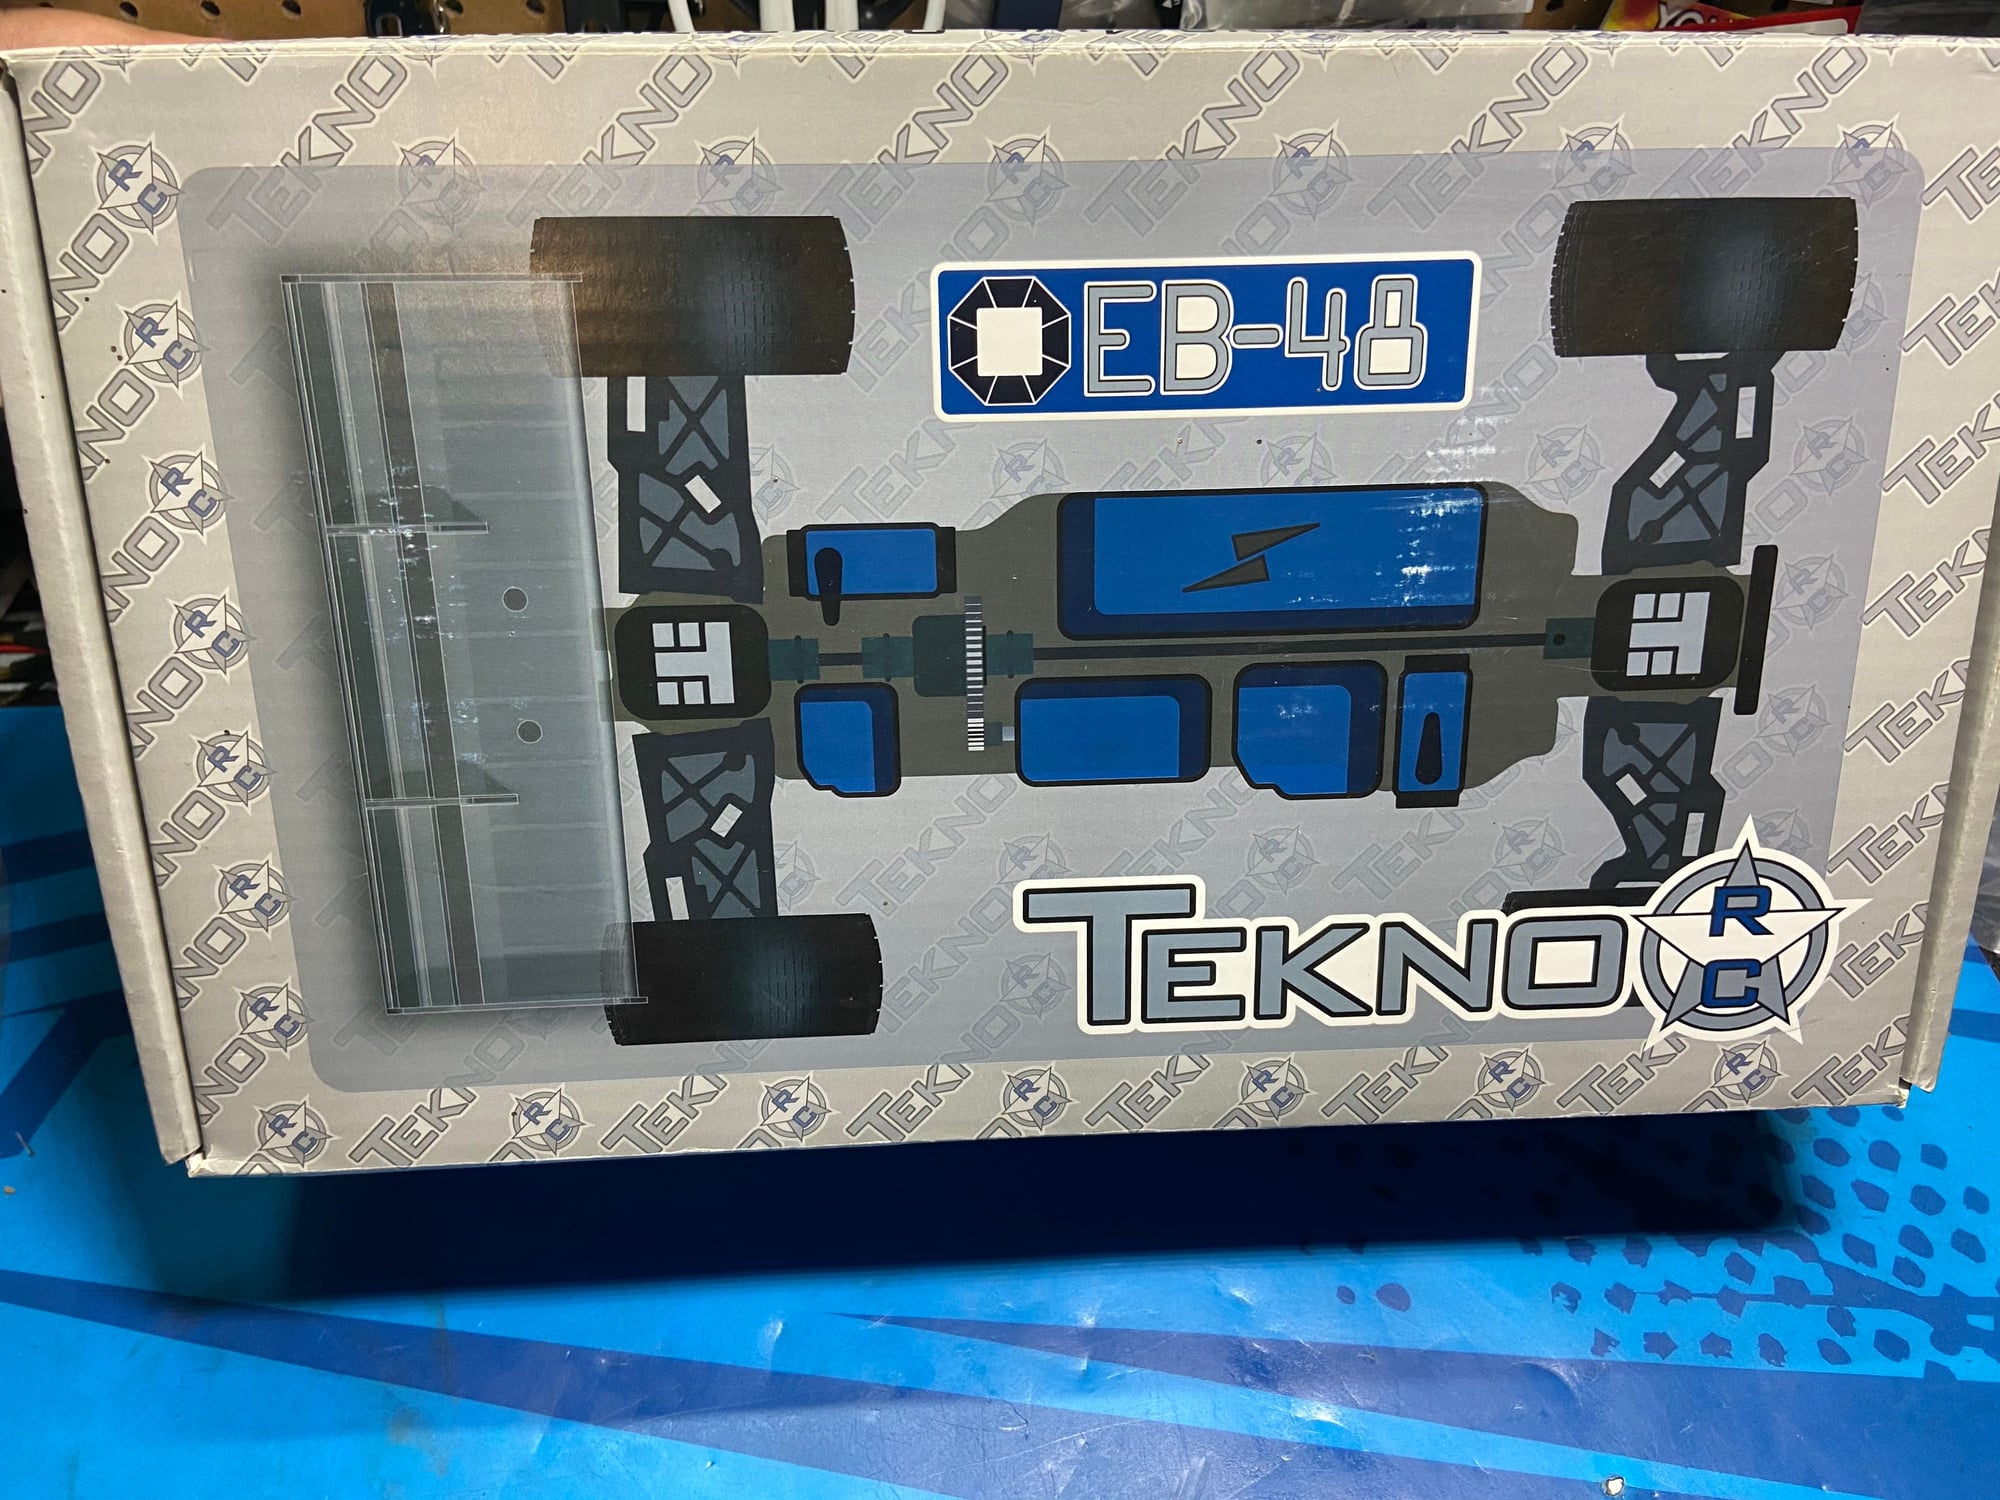 Got Tekno? Et48.3 db48 eb48.4 eb48 - R/C Tech Forums